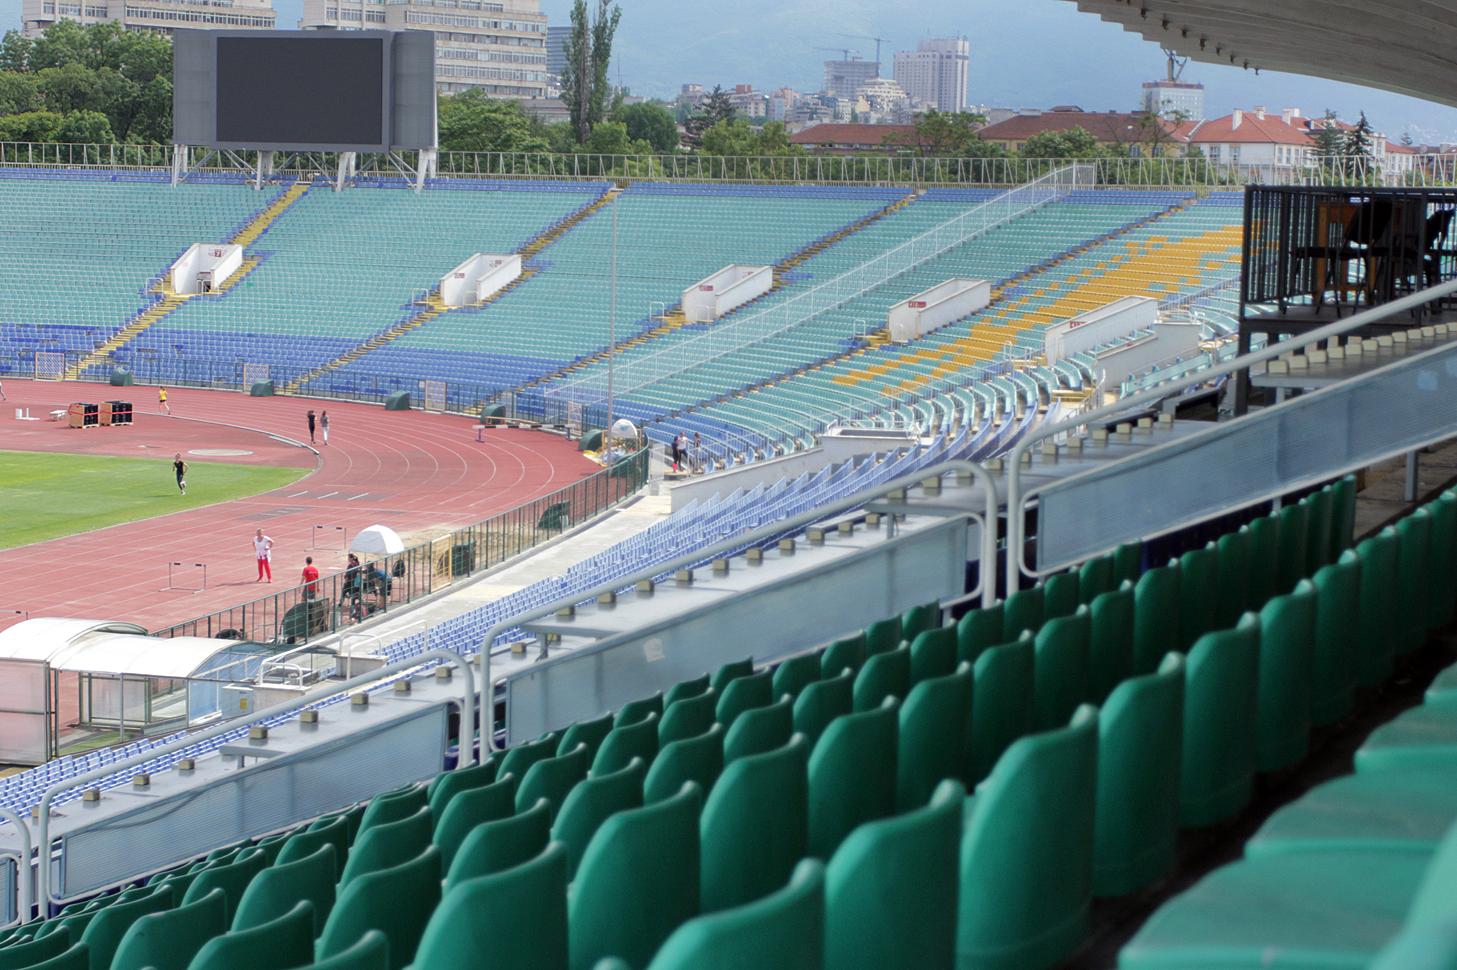 VasilLevskiNationalStadium-瓦西尔列夫斯基国家体育场-11-VasilLevskiNationalStadium